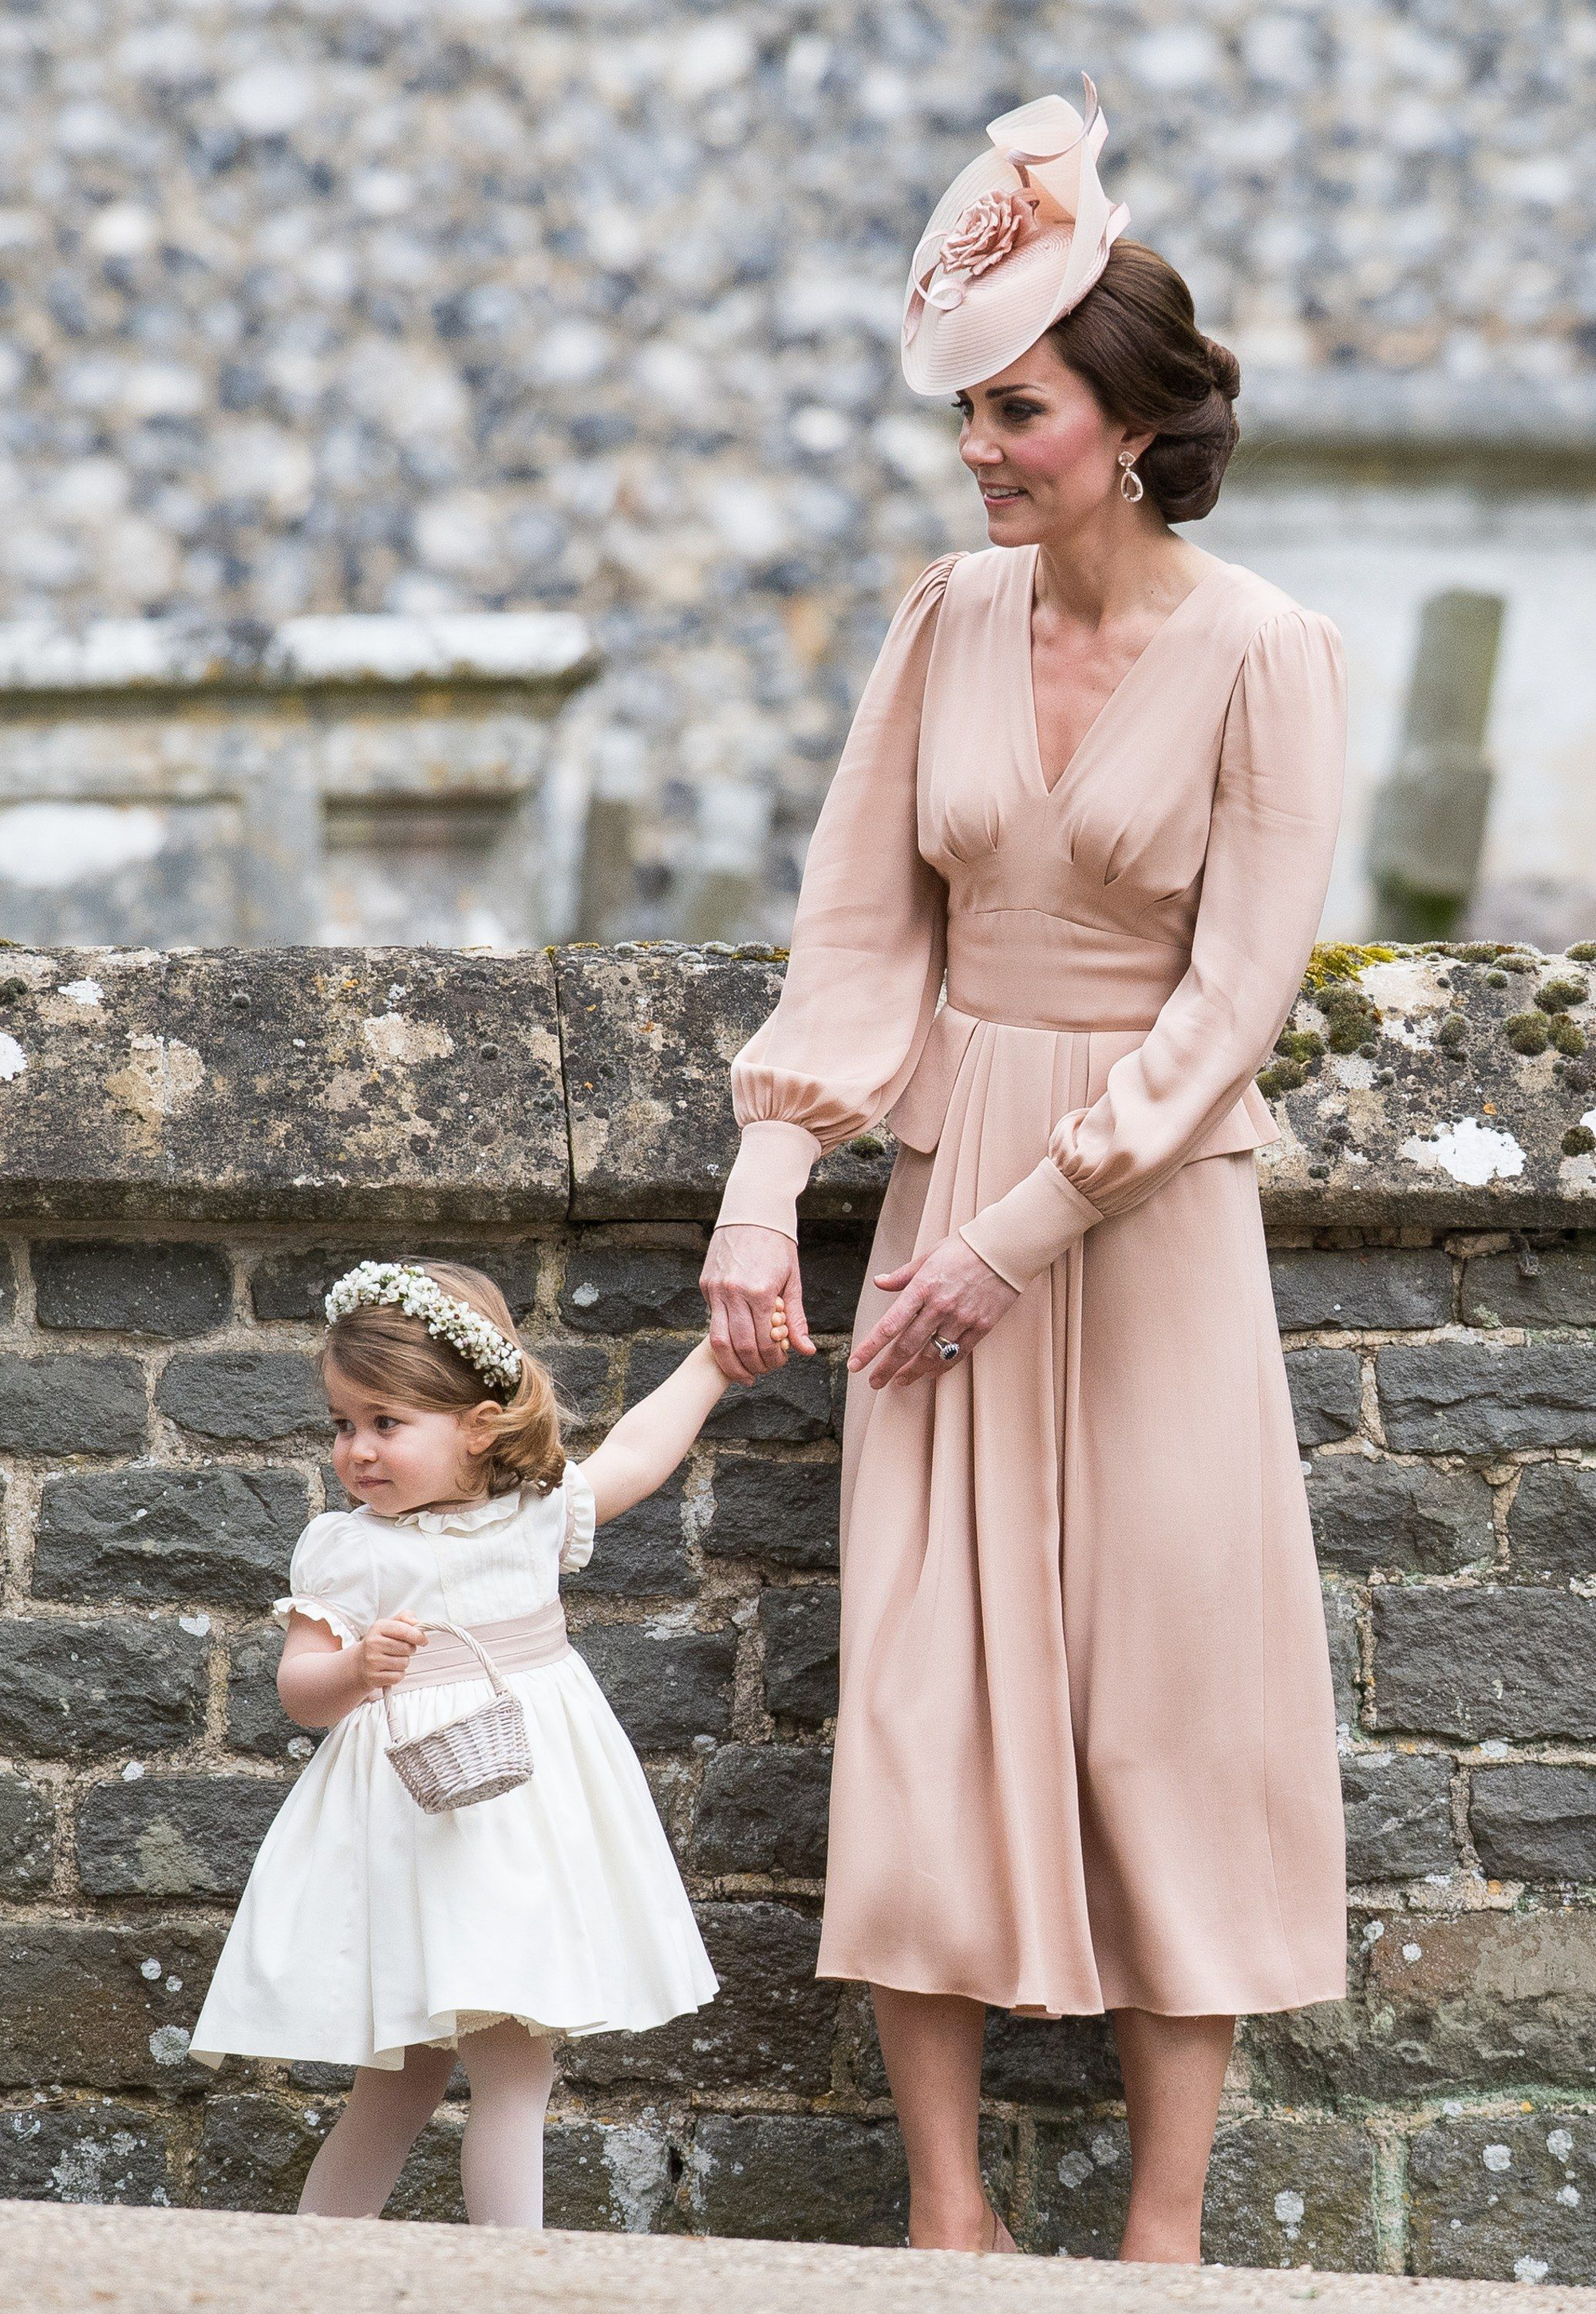 Ngắm những trang phục đẹp thanh lịch của 'Biểu tượng thời trang Hoàng gia'  - Công nương Kate